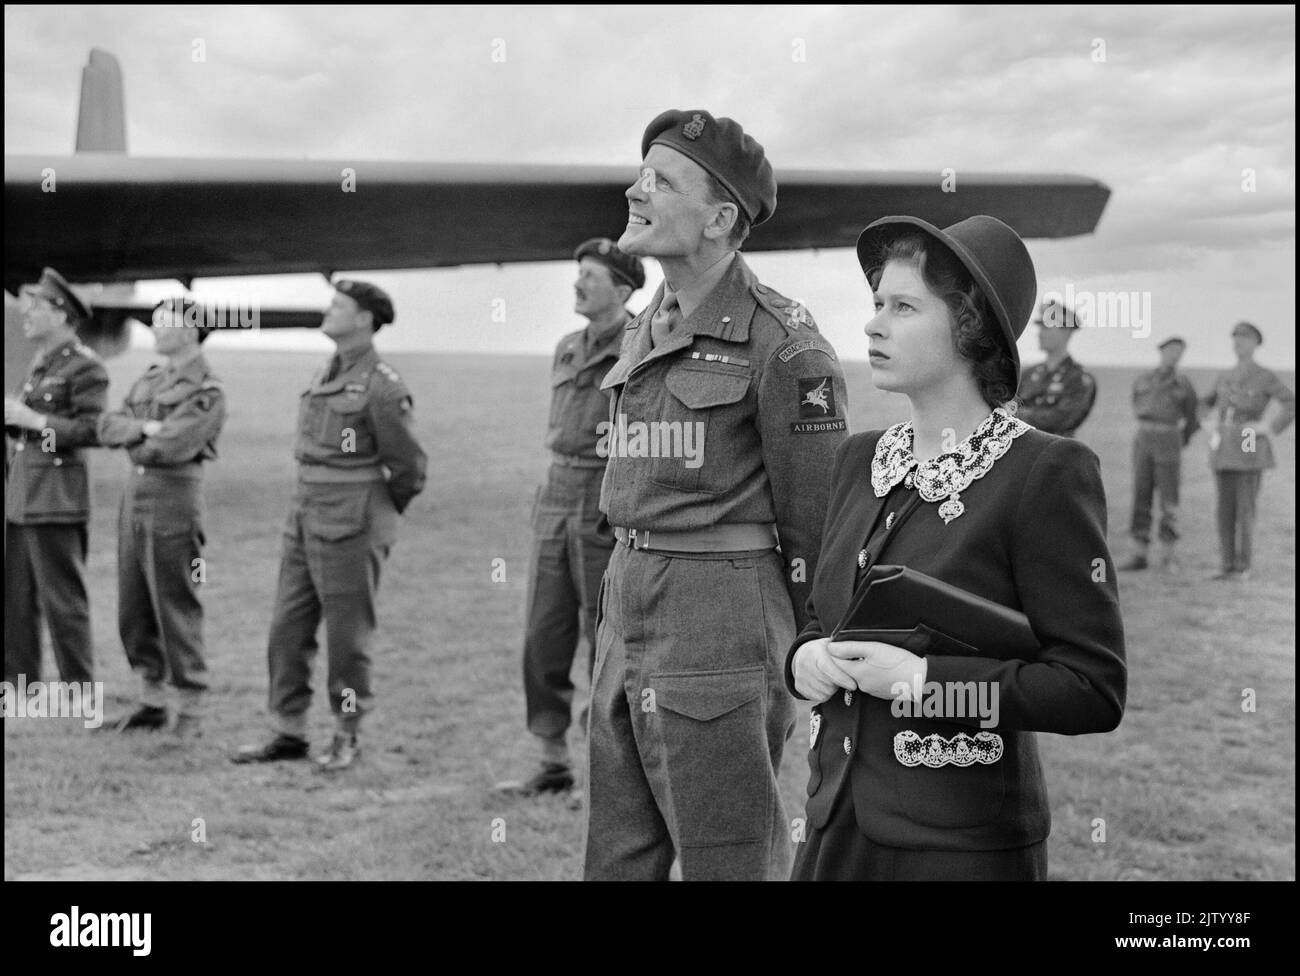 Prinzessin Elizabeth WW2 zu Besuch bei Lufttruppen, 1944. Mai Prinzessin Elizabeth (Königin Elizabeth II.) beobachtete Fallschirmspringer, die Fallschirmabwürfe während eines Besuchs bei Luftstreitkräften in England im Vorfeld des D-Day probten. D-Day, Normandy Landings 1944, Nordwesteuropa, zweiter Weltkrieg Stockfoto